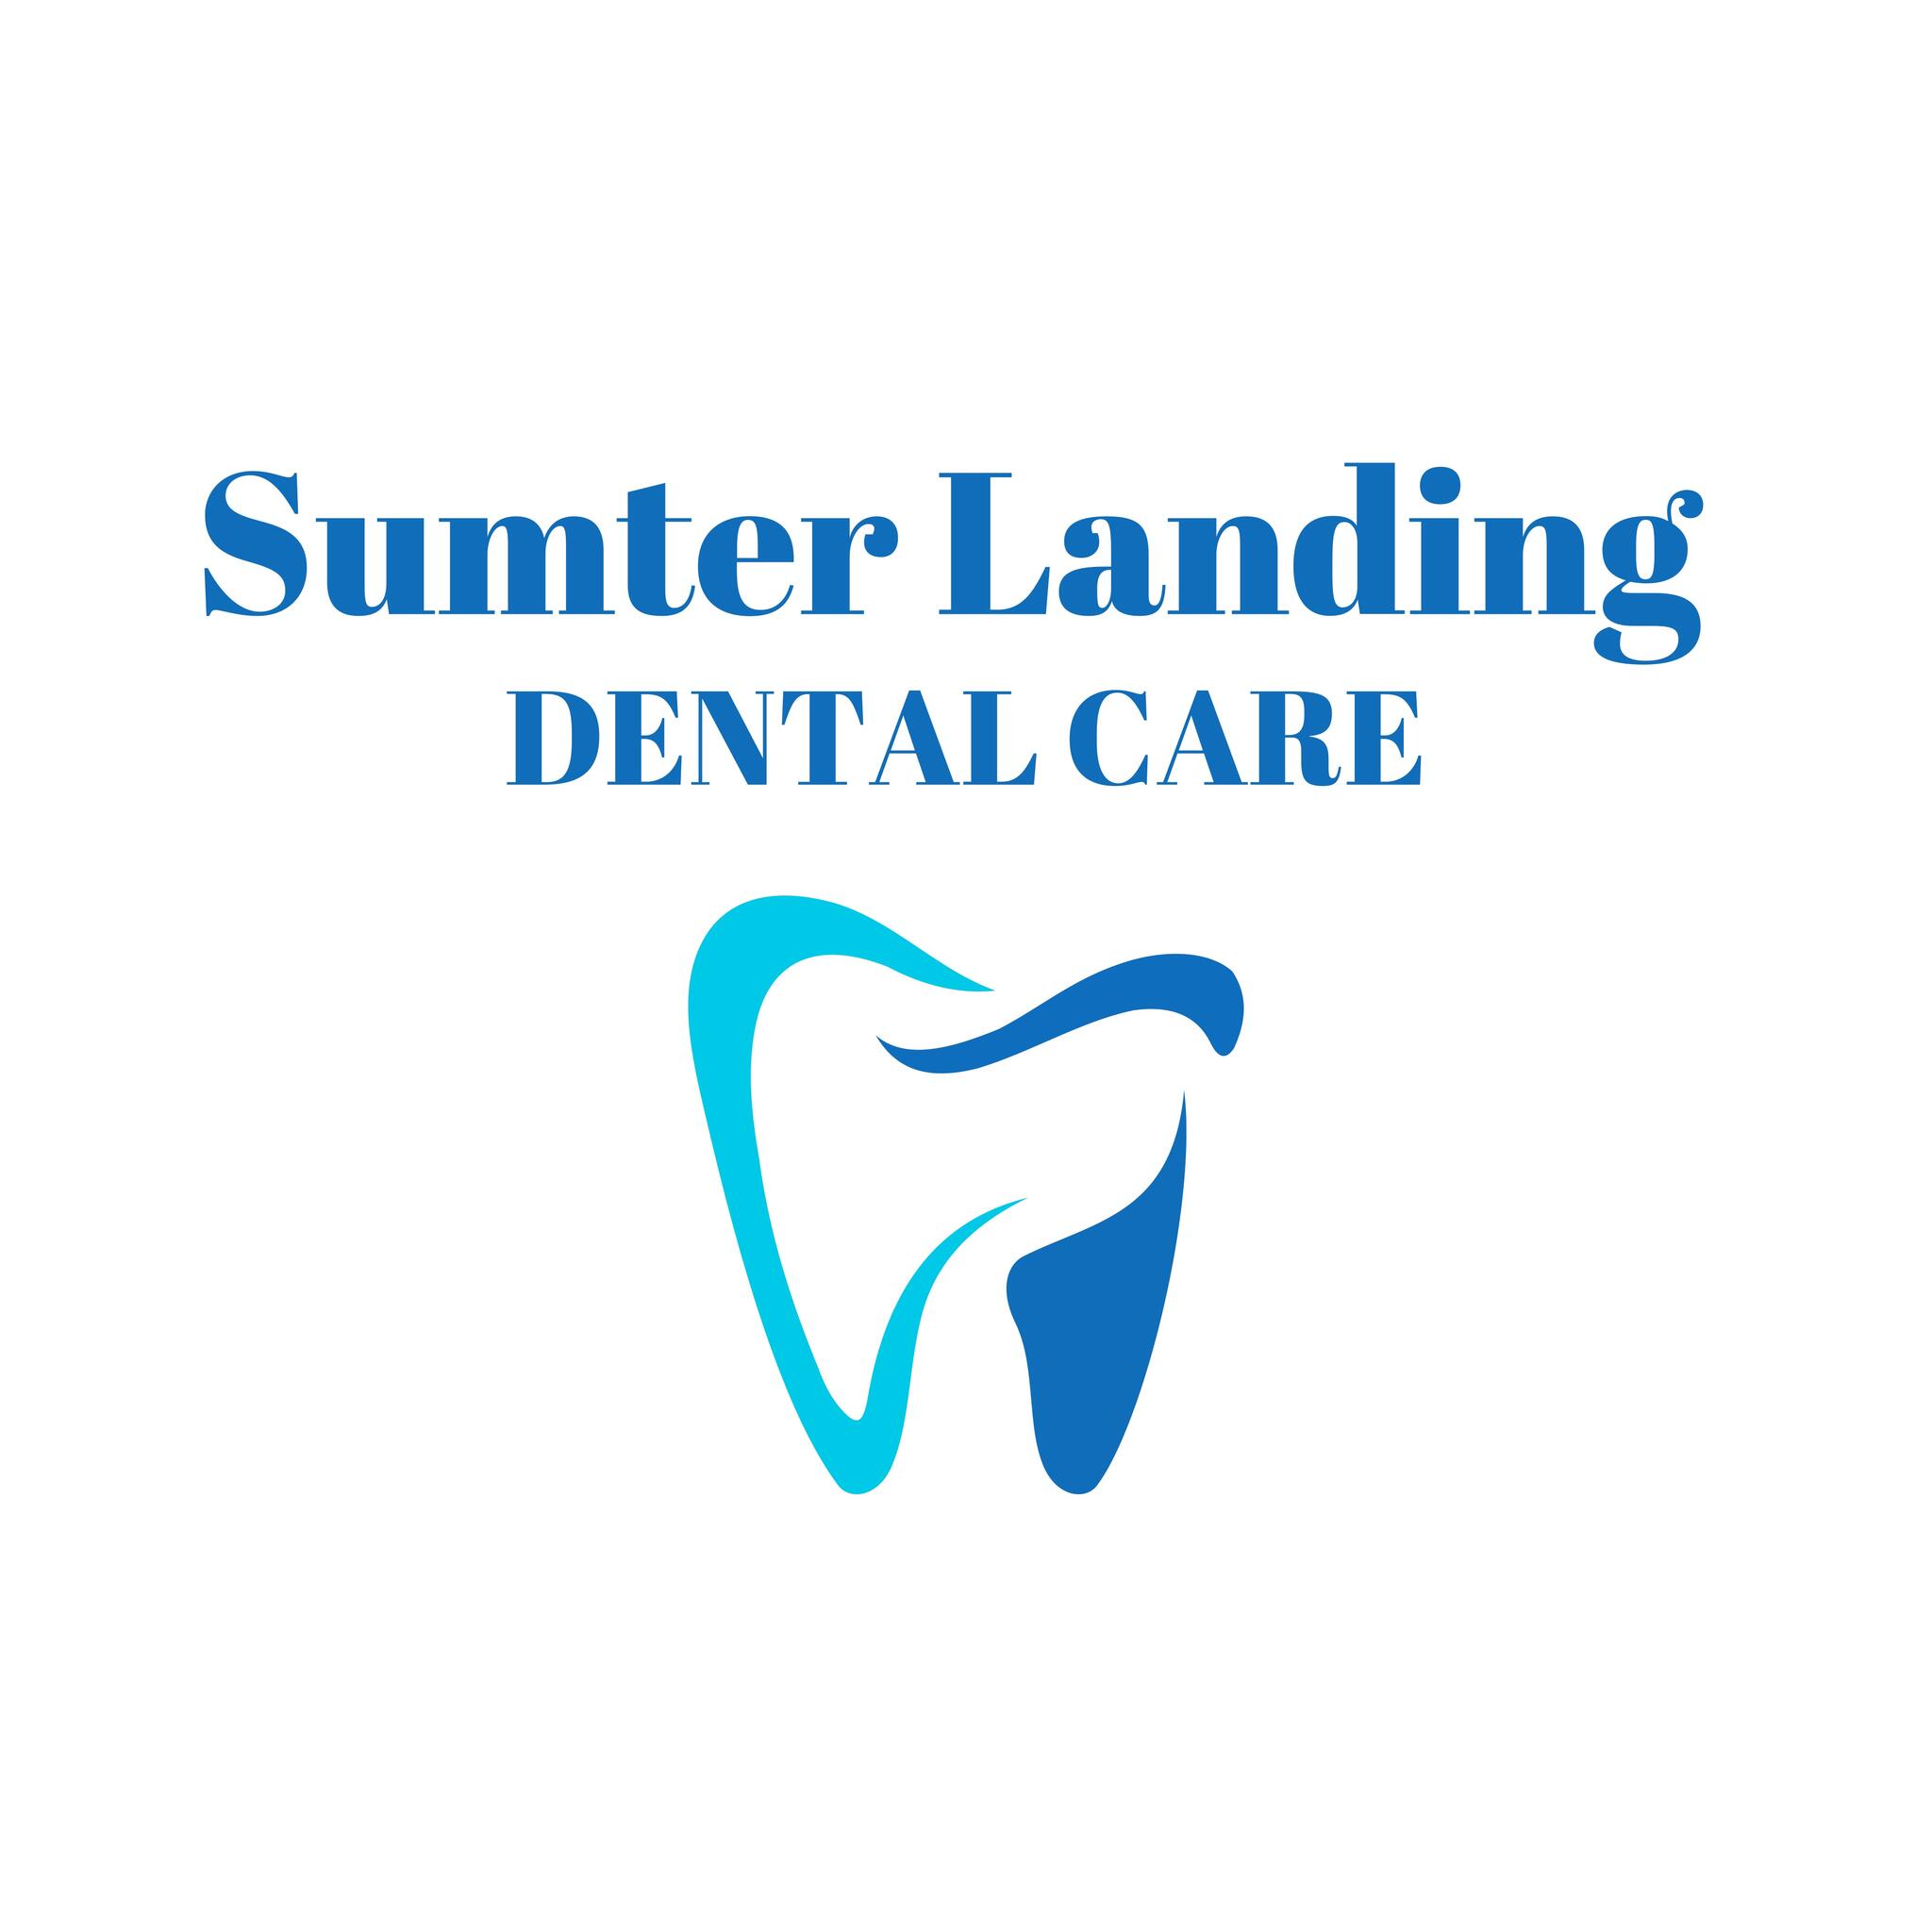 Dr. David Price, Sumter Landing Dental Care